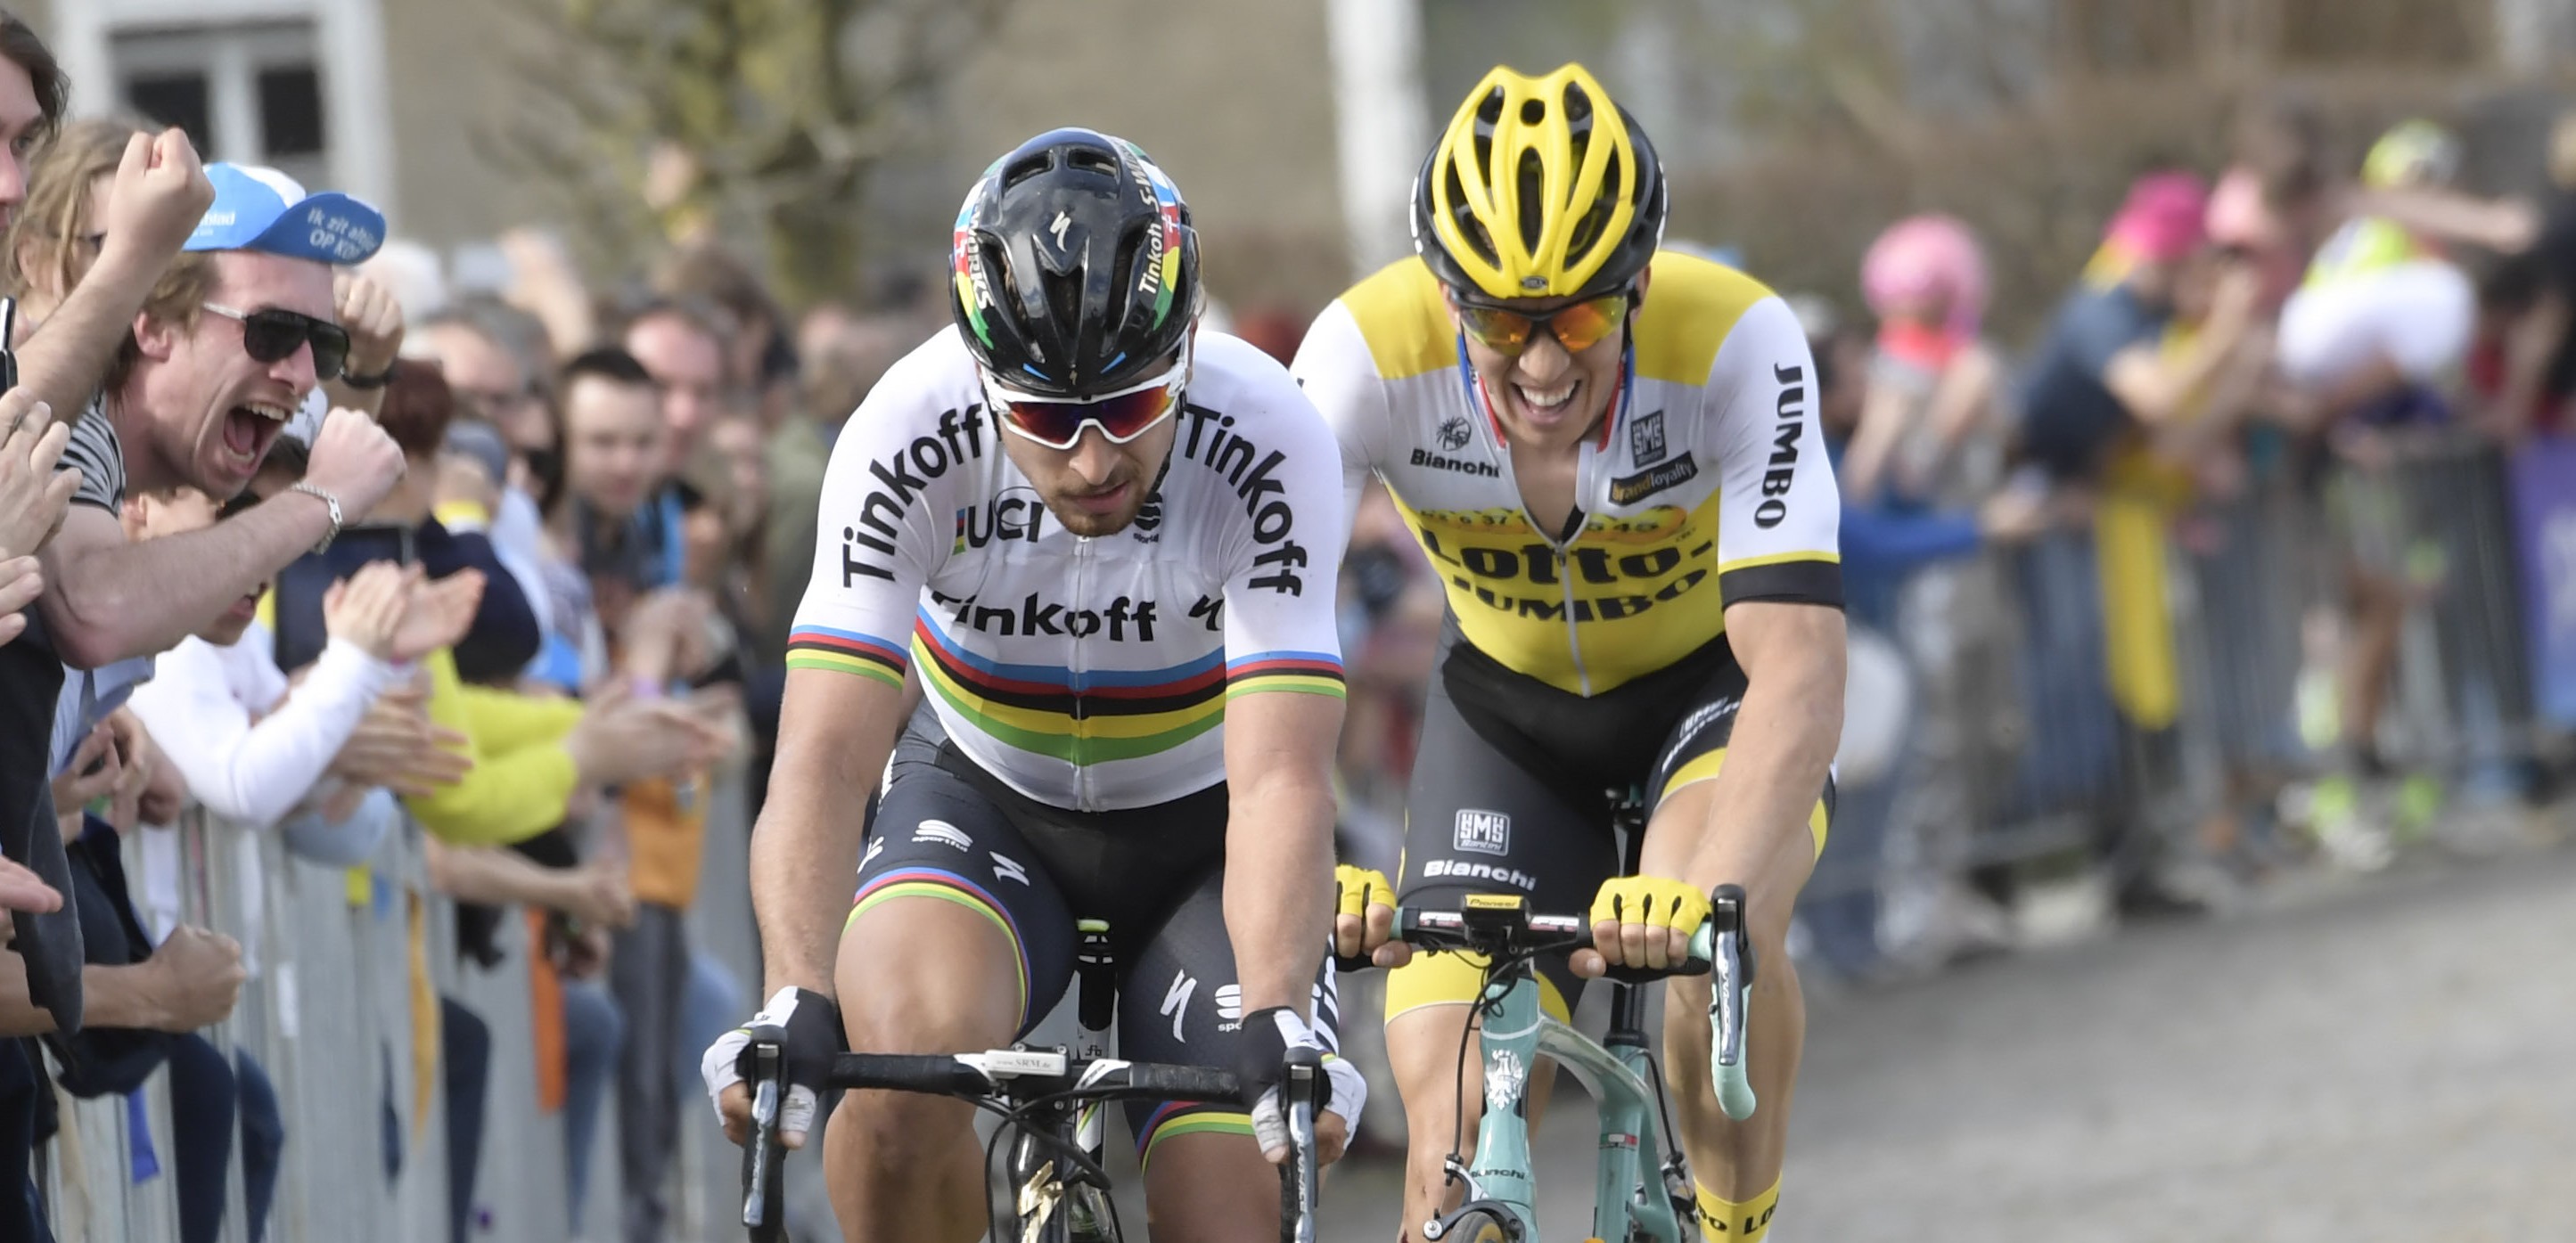 03-04-2016 Tour Des Flandres; 2016, Tinkoff; 2016, Lotto Nl - Jumbo; Sagan, Peter; Vanmarcke, Sep; Old Kwaremont;